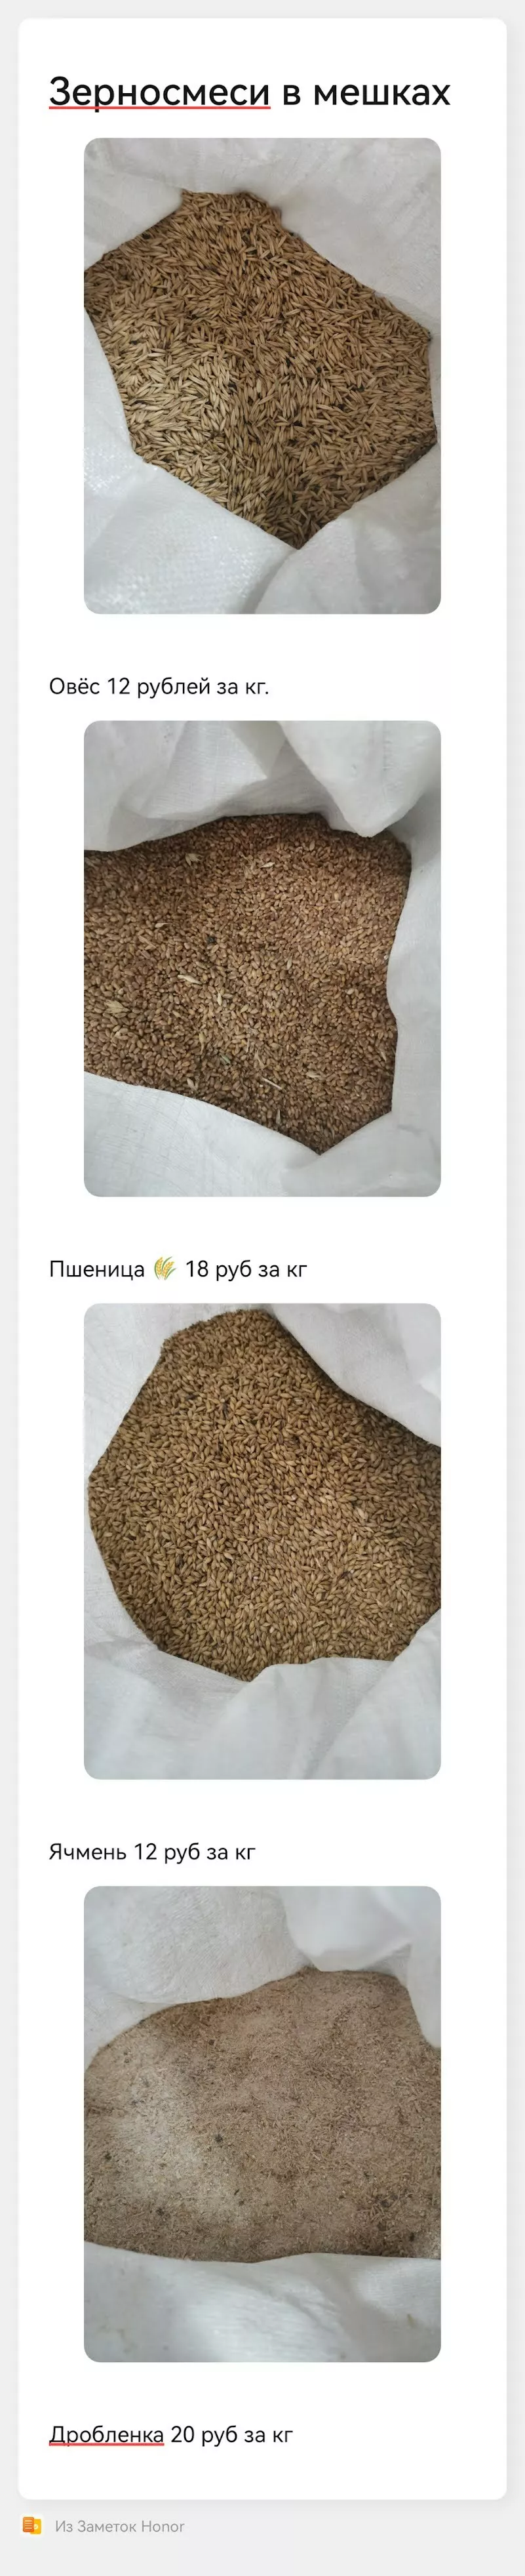 фотография продукта Овес, пшеница, ячмень, дробленка, горох 